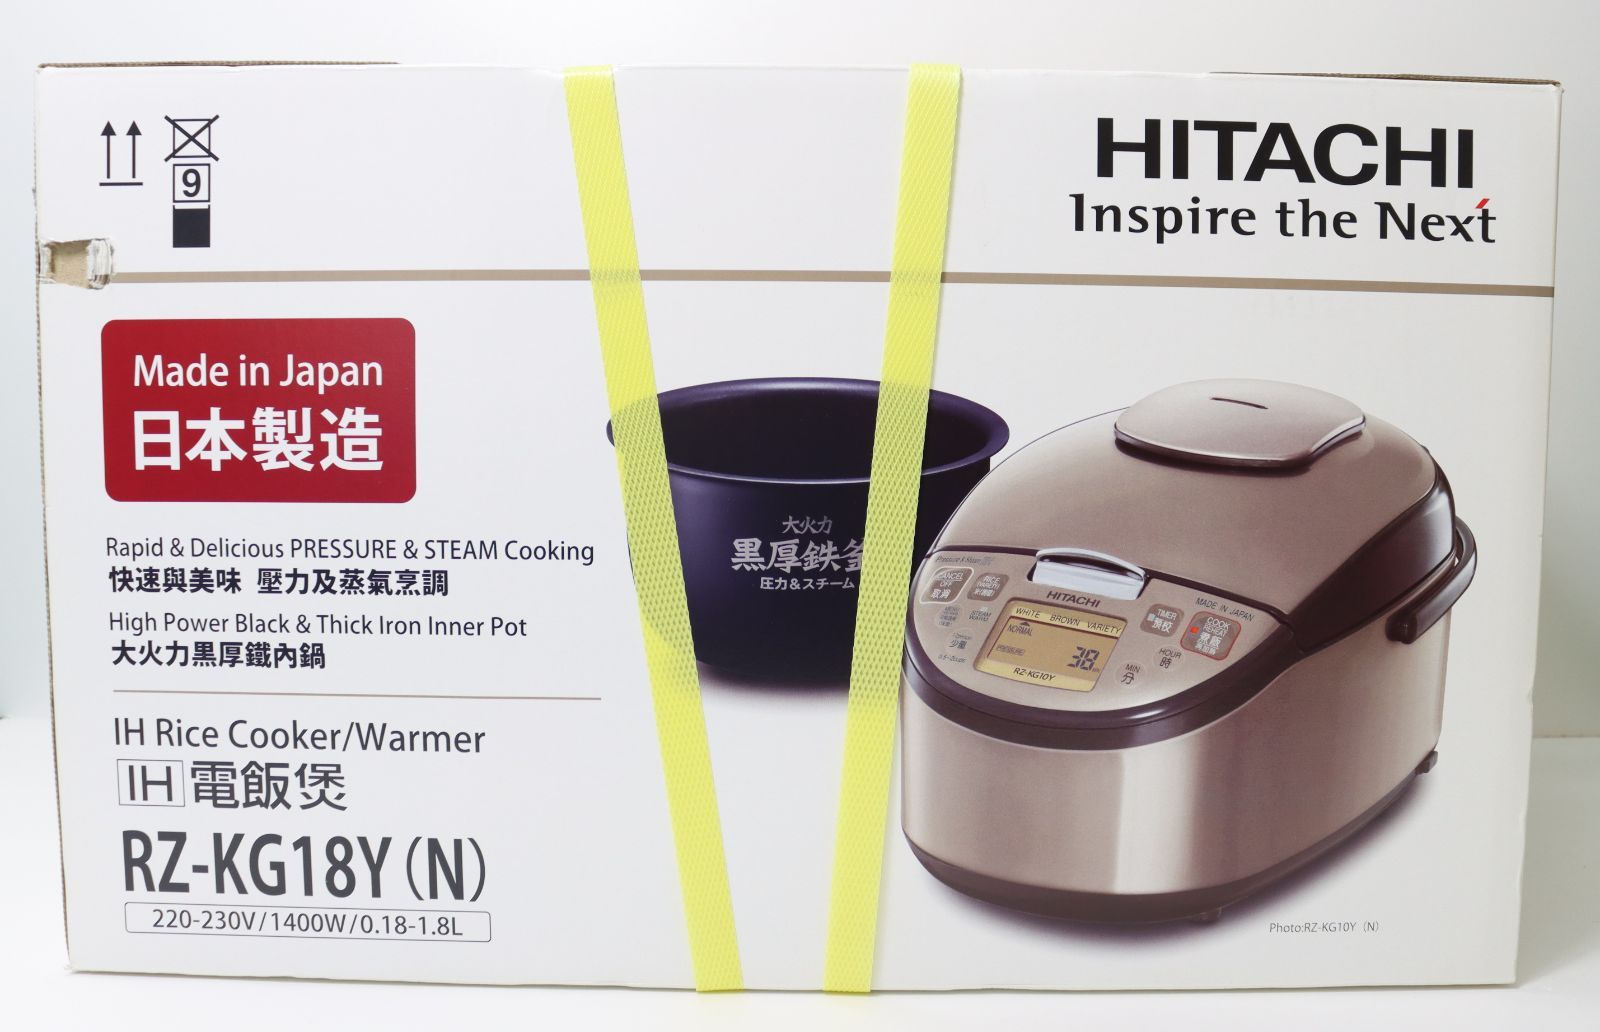 新品未開封 日立 HITACHI 炊飯器220-230V ツーリストモデル